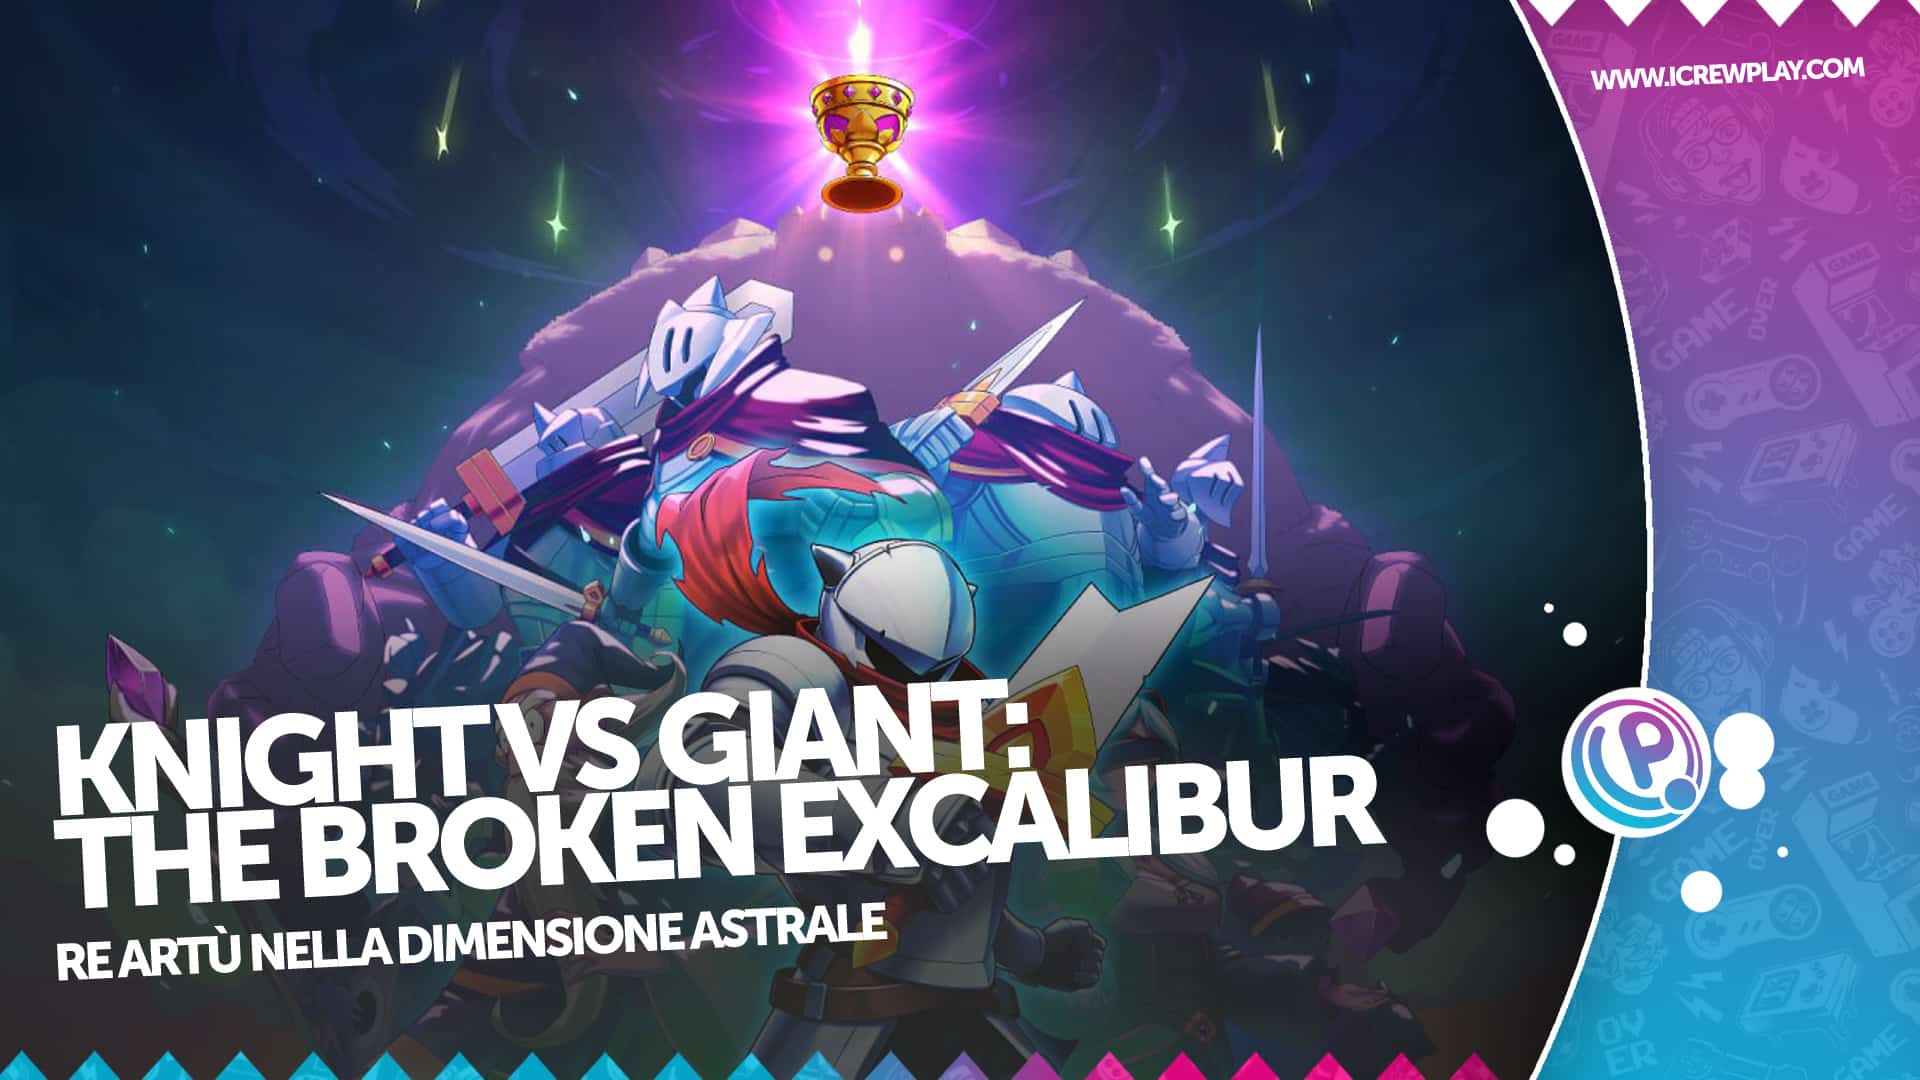 Knight vs Giant: the Broken Excalibur